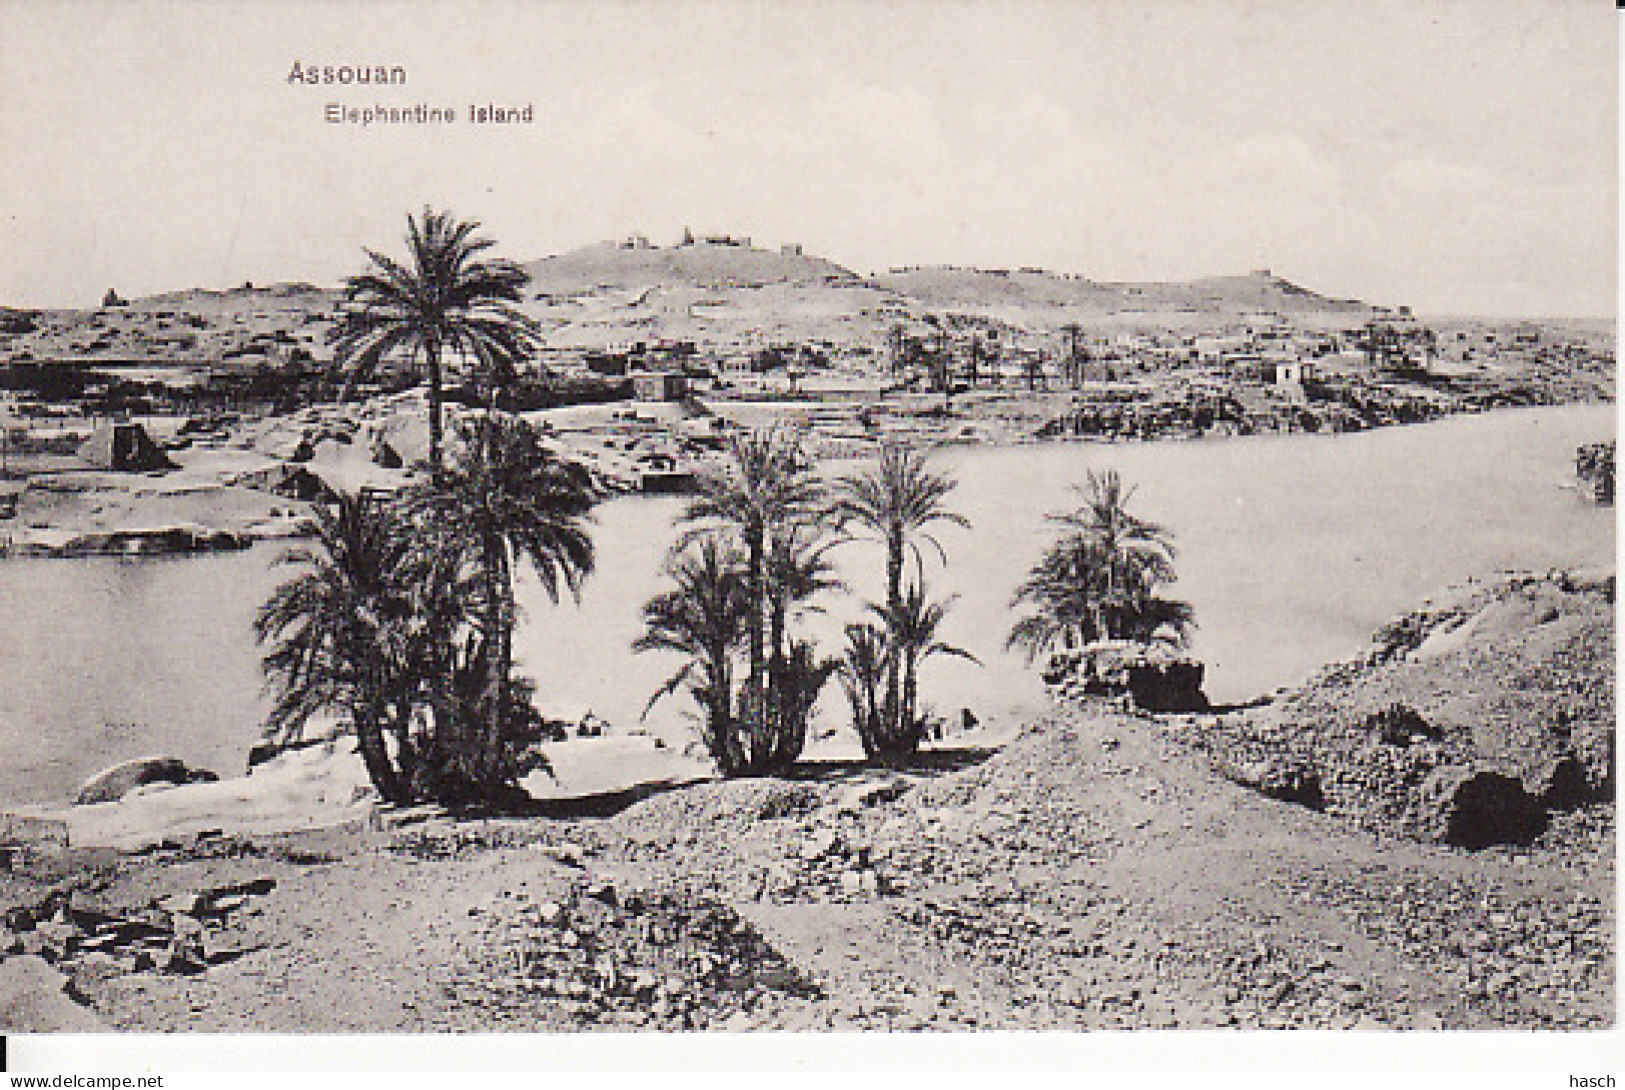 2815	49	Assouan, Elephantine Island  - Assuan